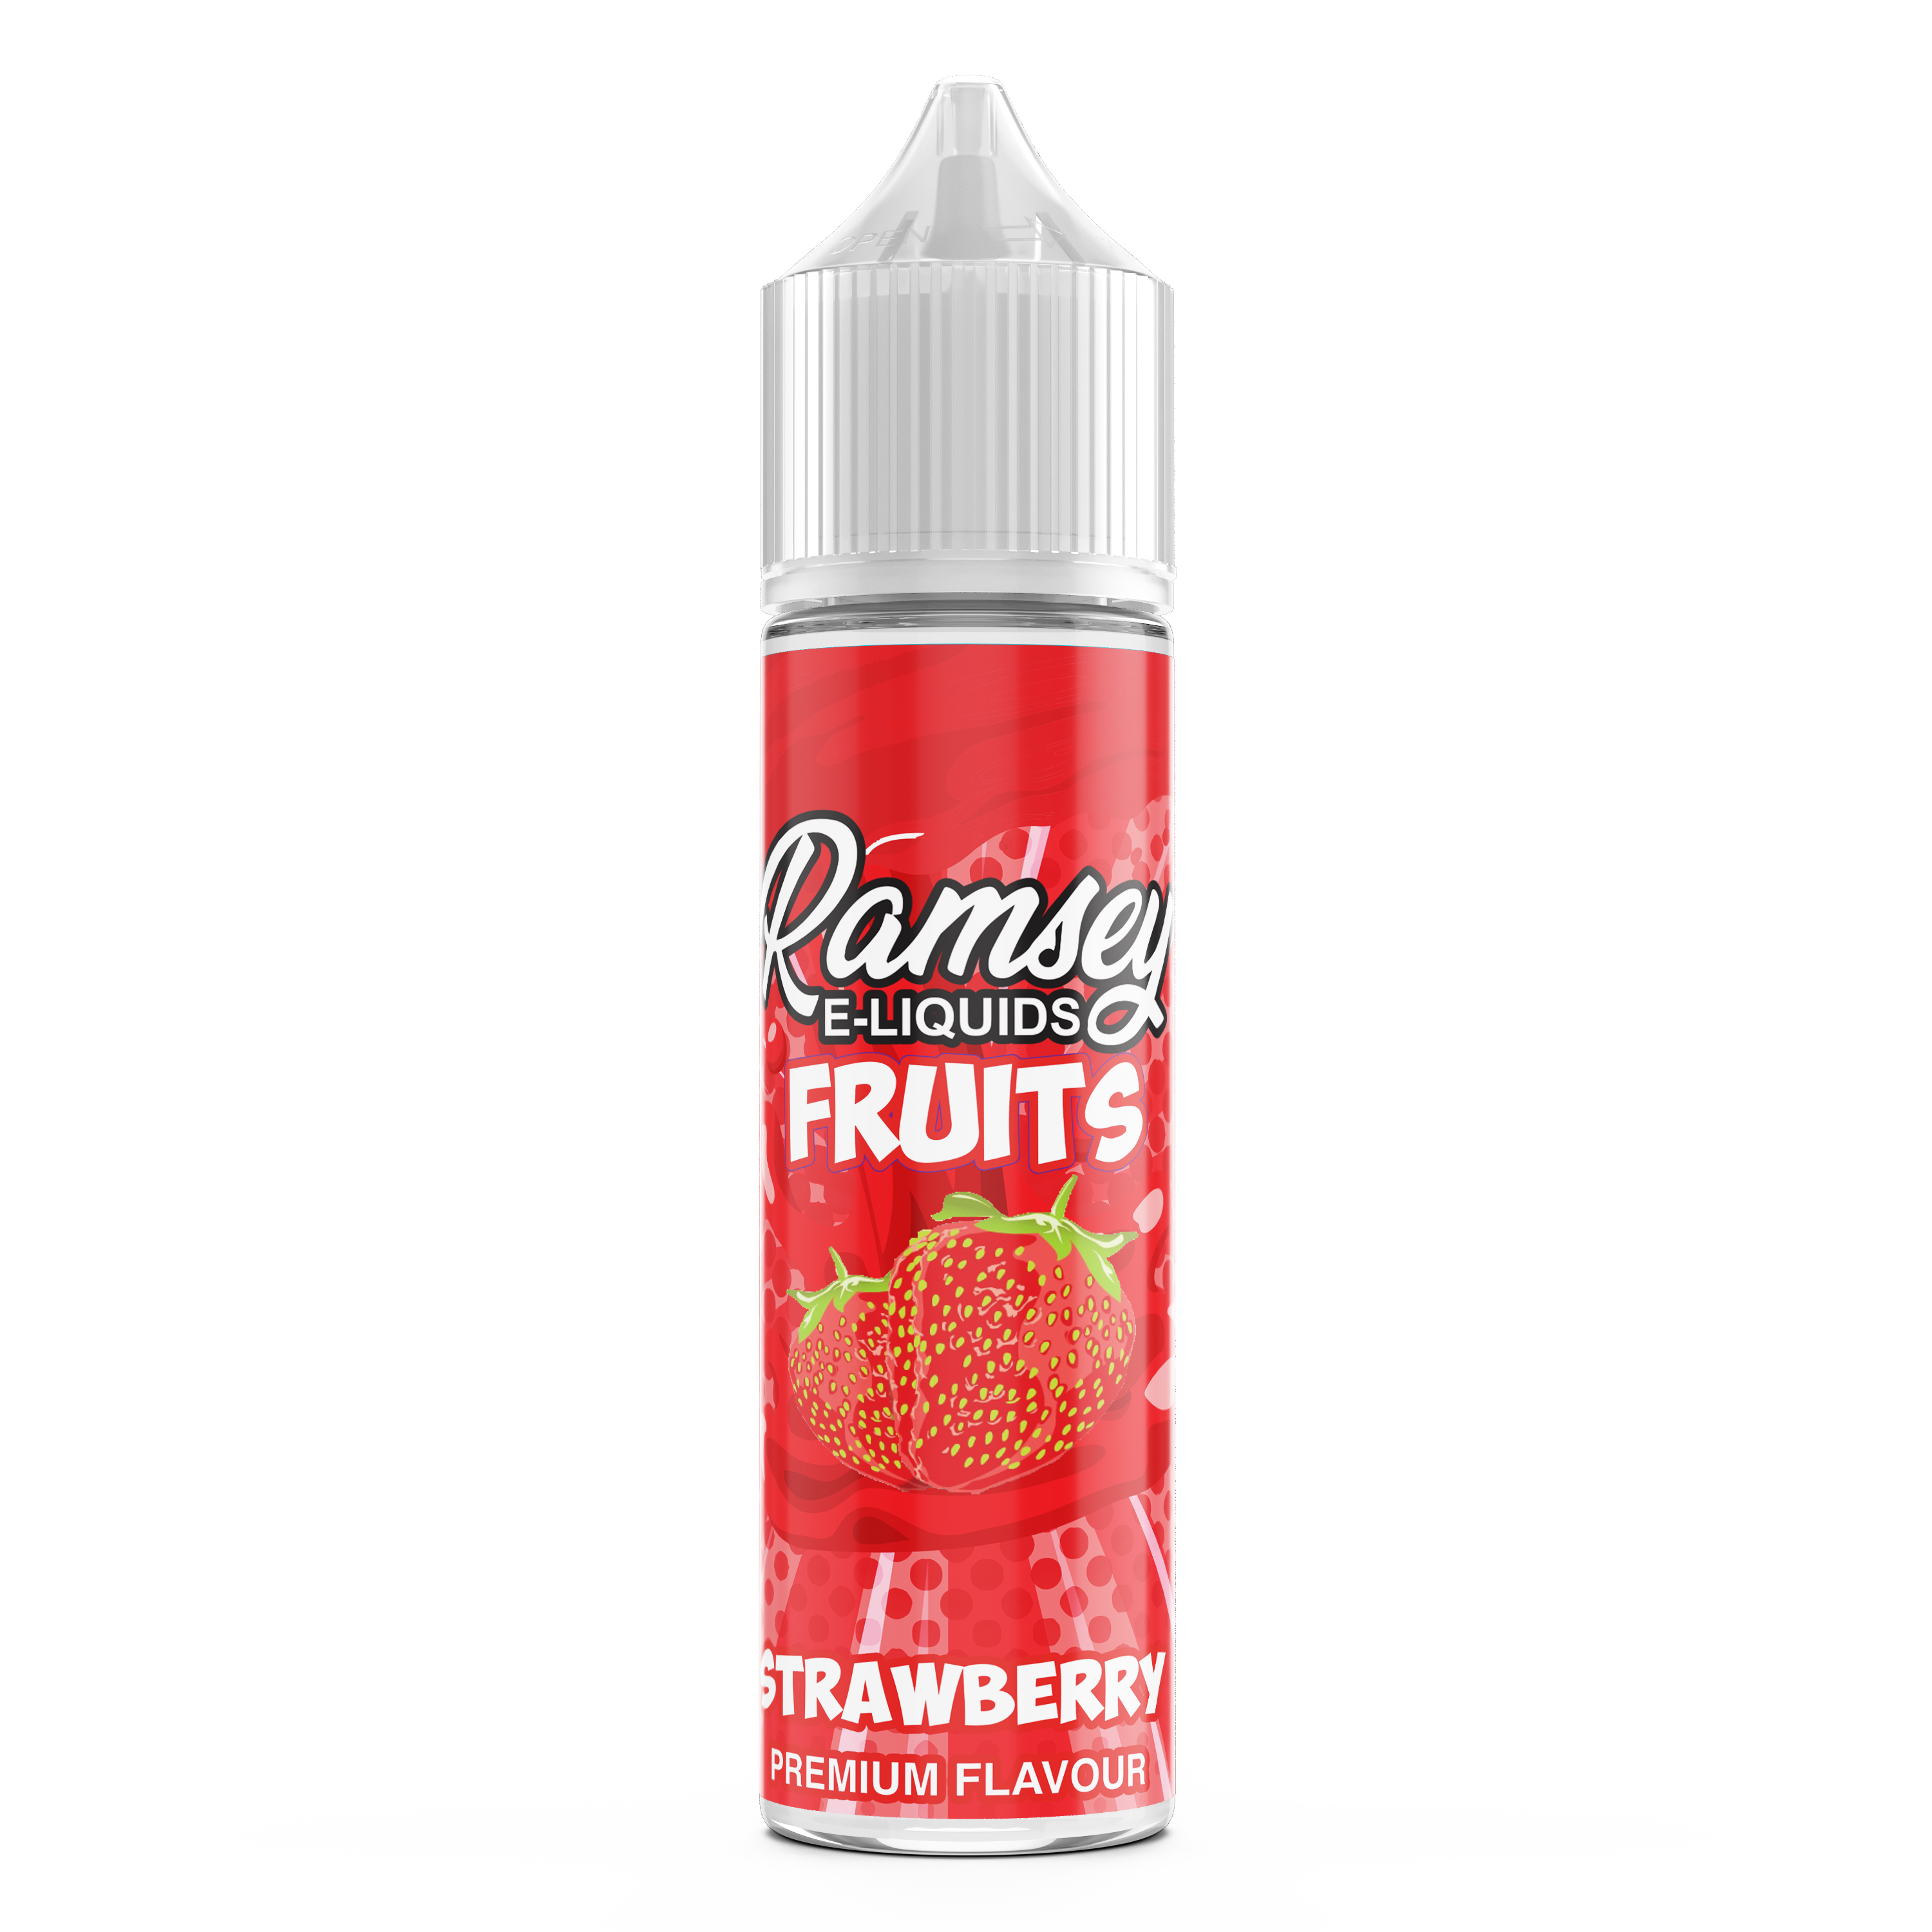 Ramsey E-Liquids Fruits: Strawberry 0mg 50ml Shortfill E-Liquid